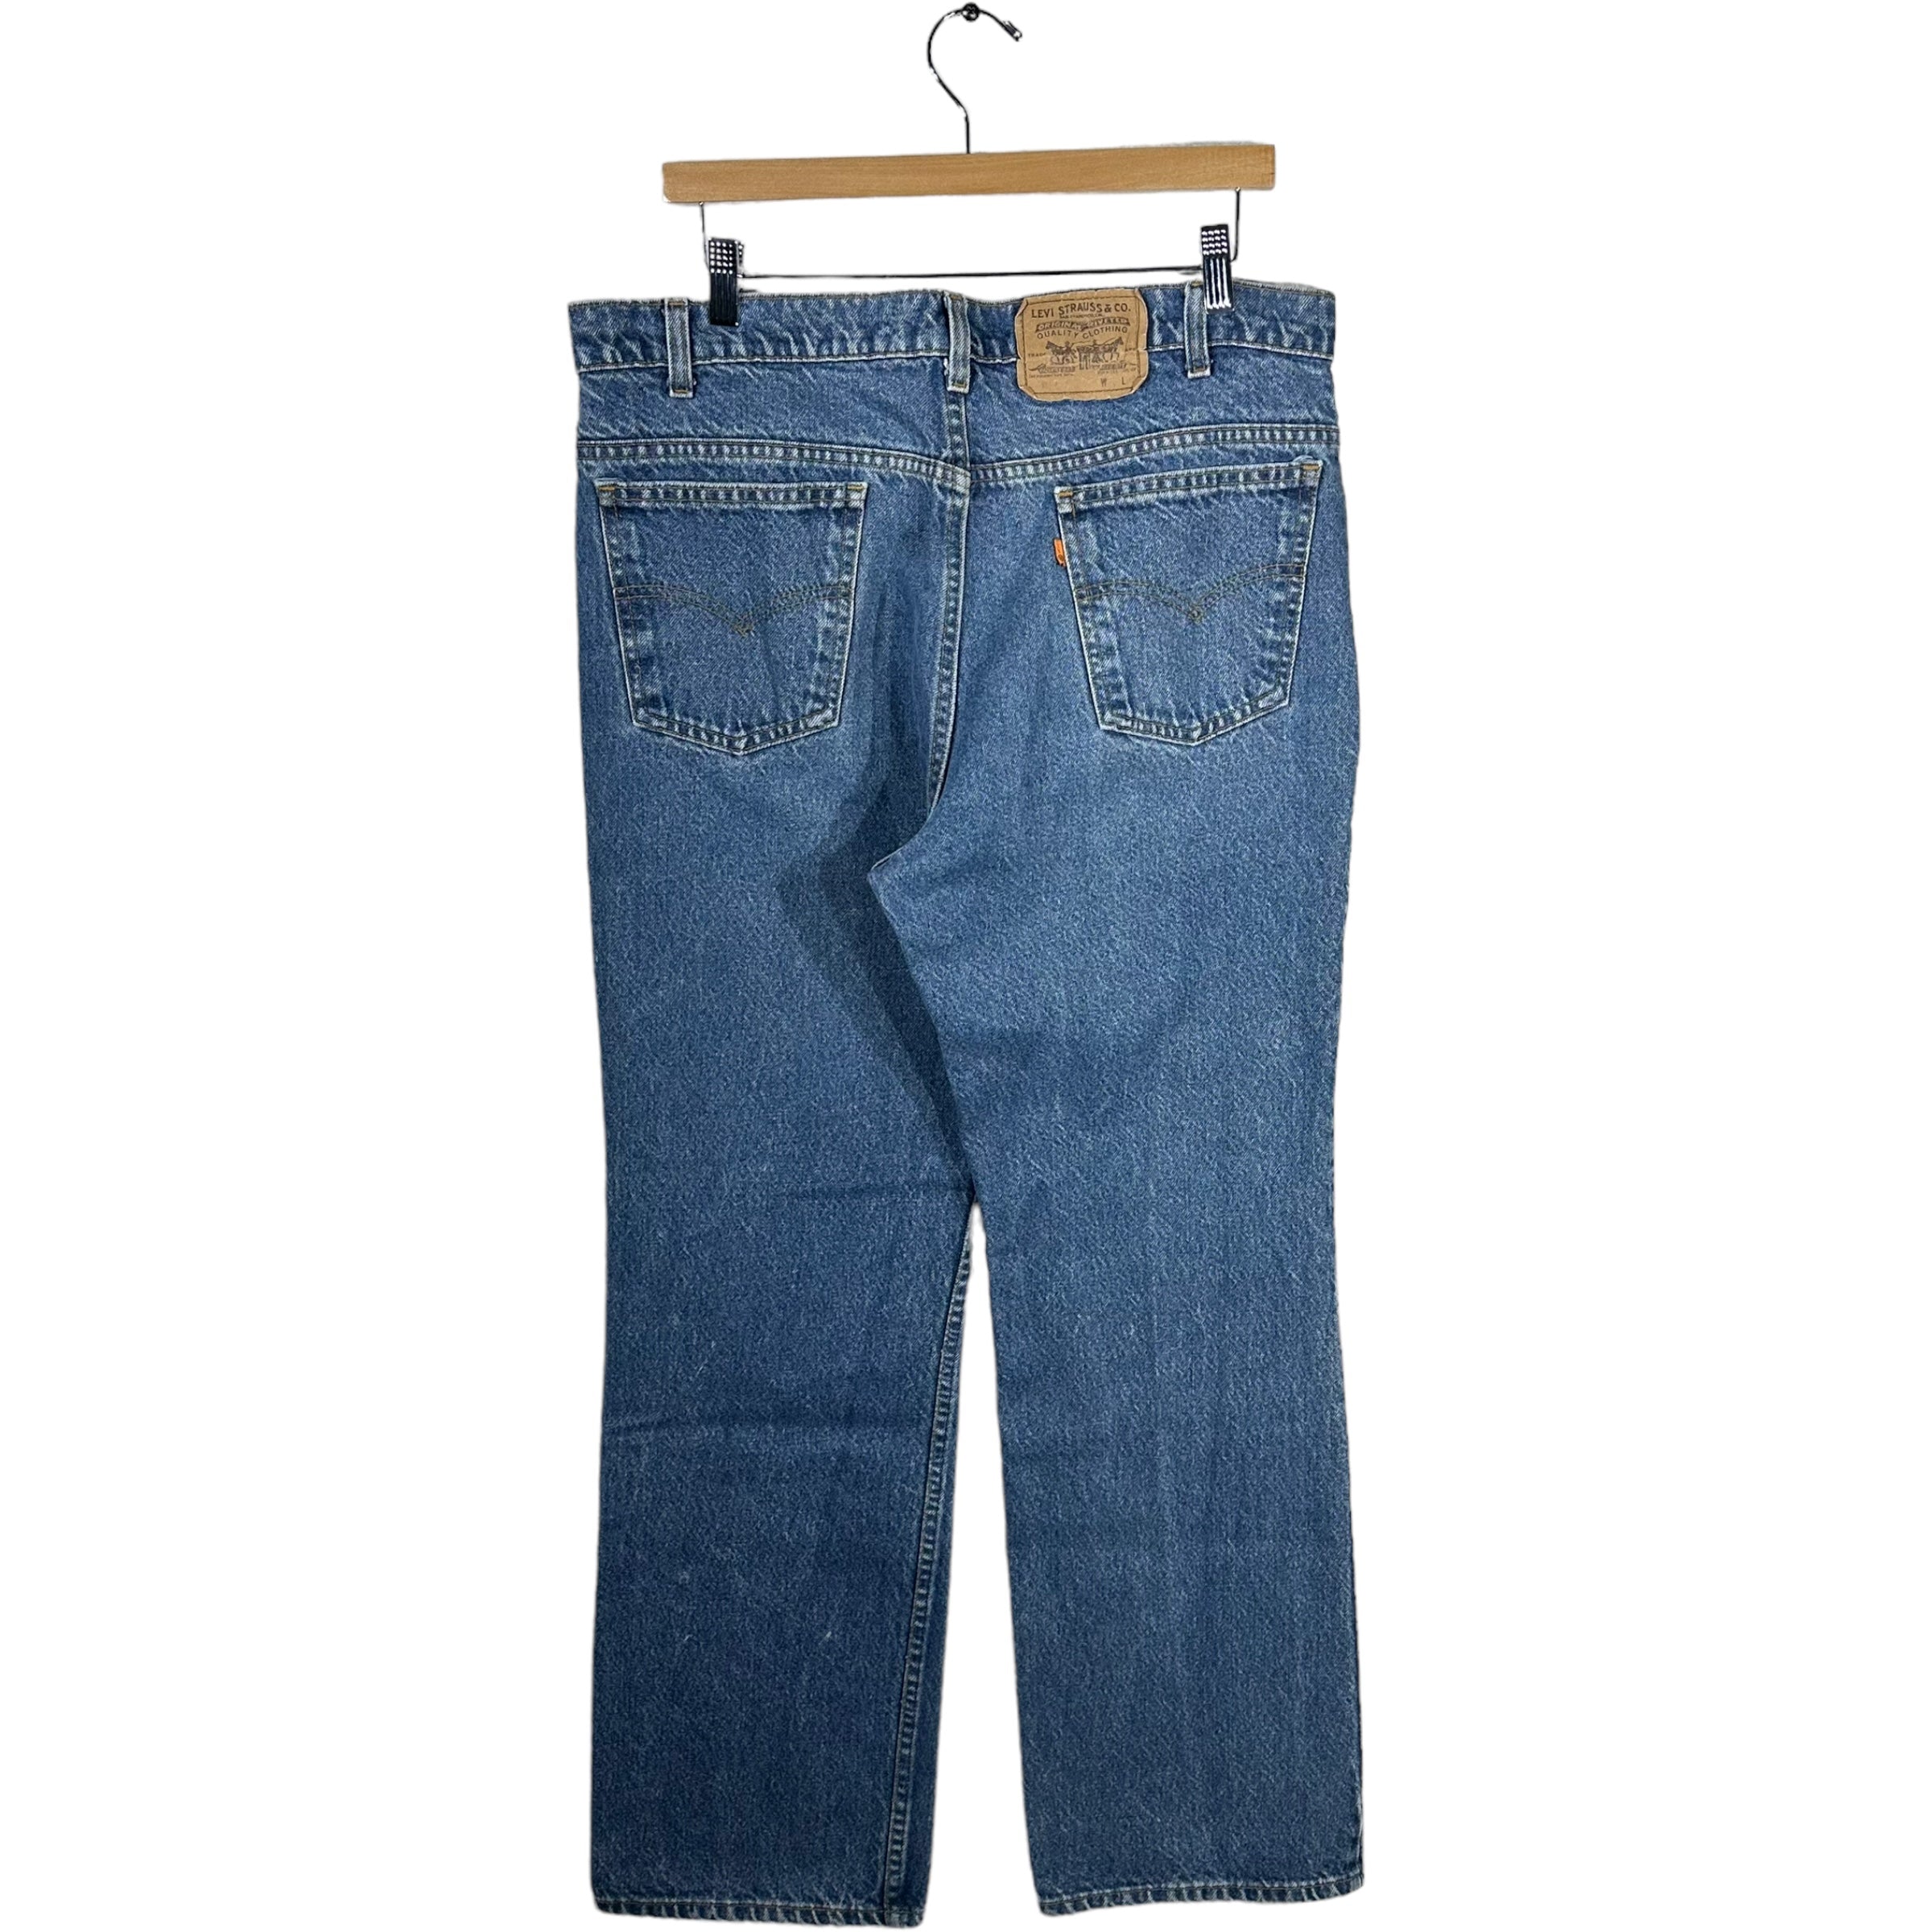 Vintage Levis Denim Jeans